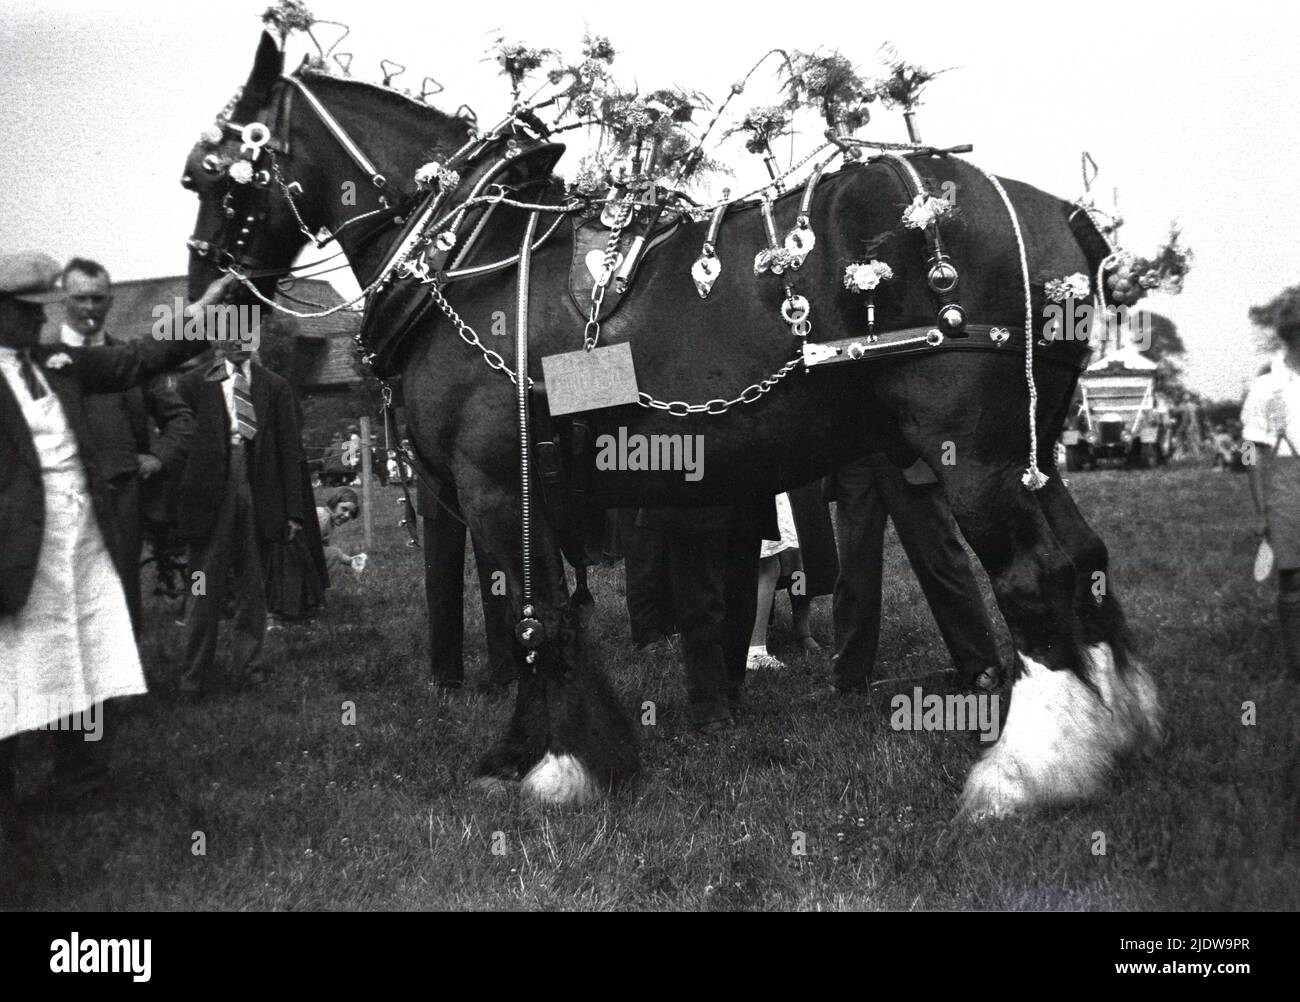 1930s, histórico, fuera en un campo en un caballo agrícola show, un caballo tradicional de la región, un caballo de trabajo de pie con su dueño, con correas de flores decoradas. En el siglo 19th, los caballos pesados del condado eran una esencia para la agricultura y la agricultura. La Sociedad de Caballos English Cart fue fundada en 1878, cambiando su nombre a la Sociedad de Caballos Shire del Reino Unido. Foto de stock